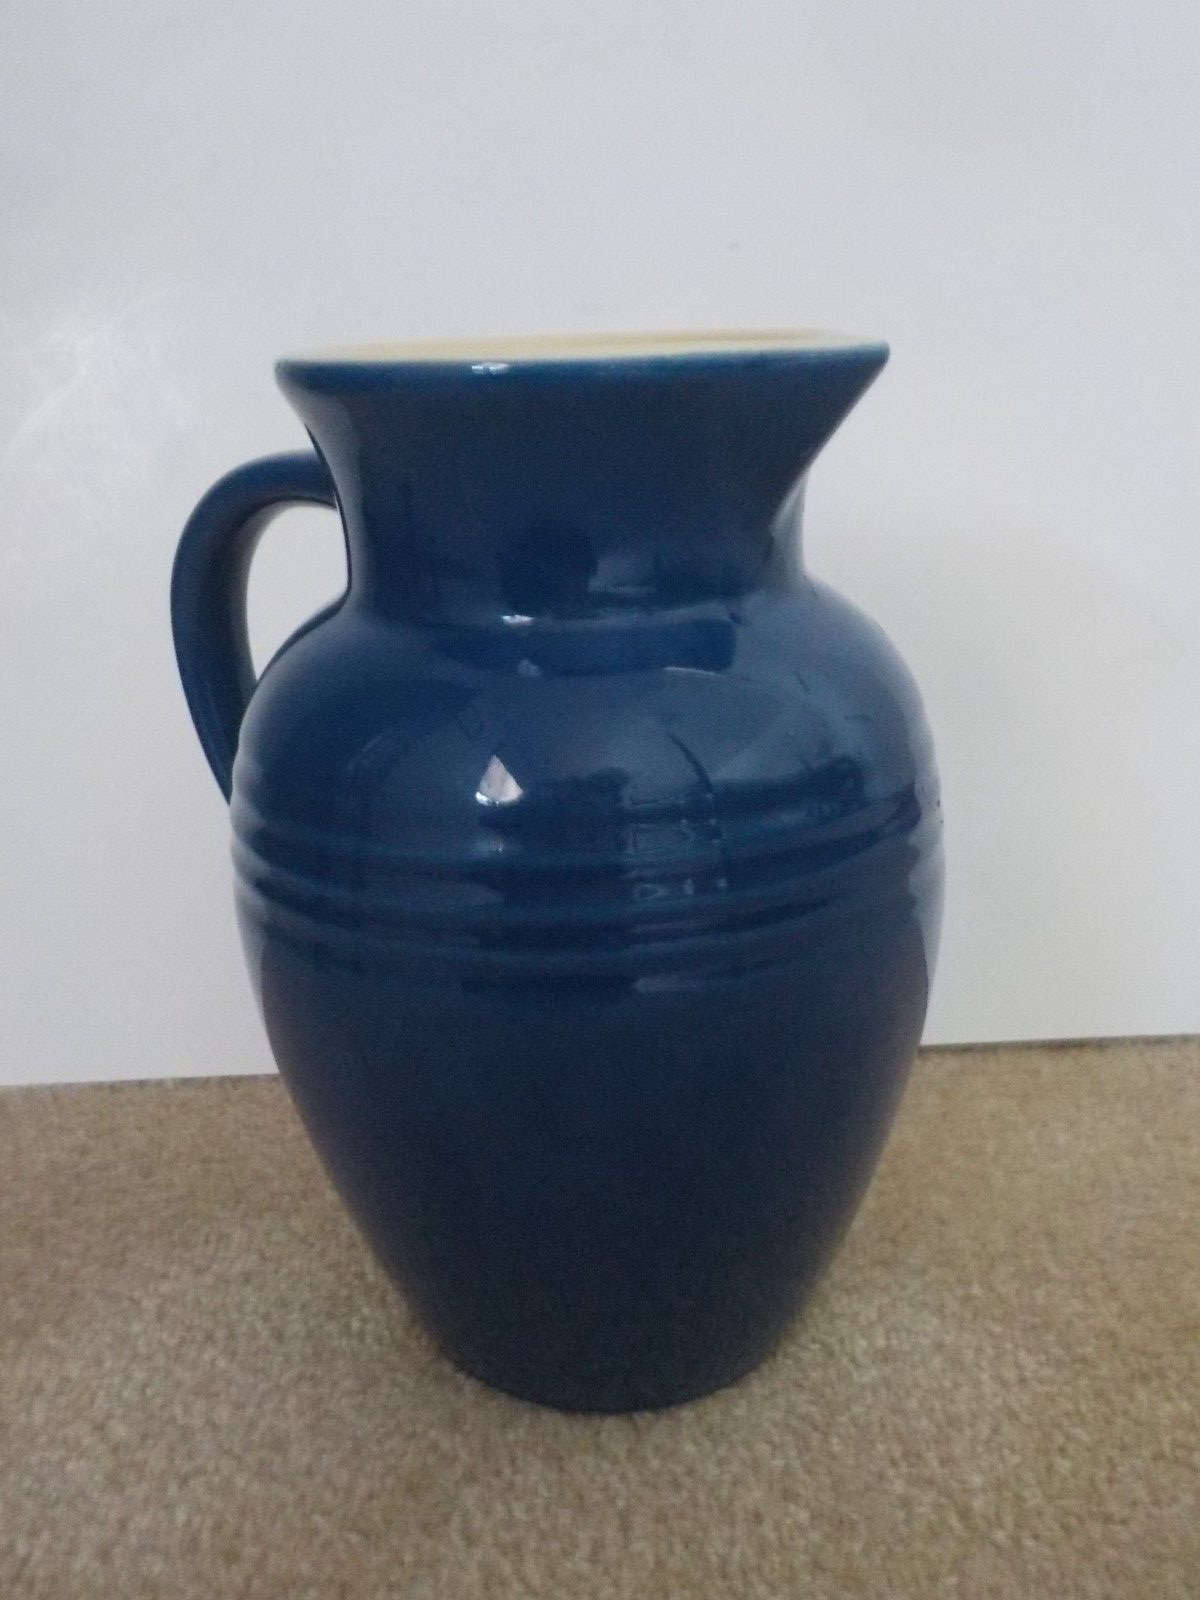 Vintage Le Creuset blue ceramic pitcher 10 cups or  2.5 quarts